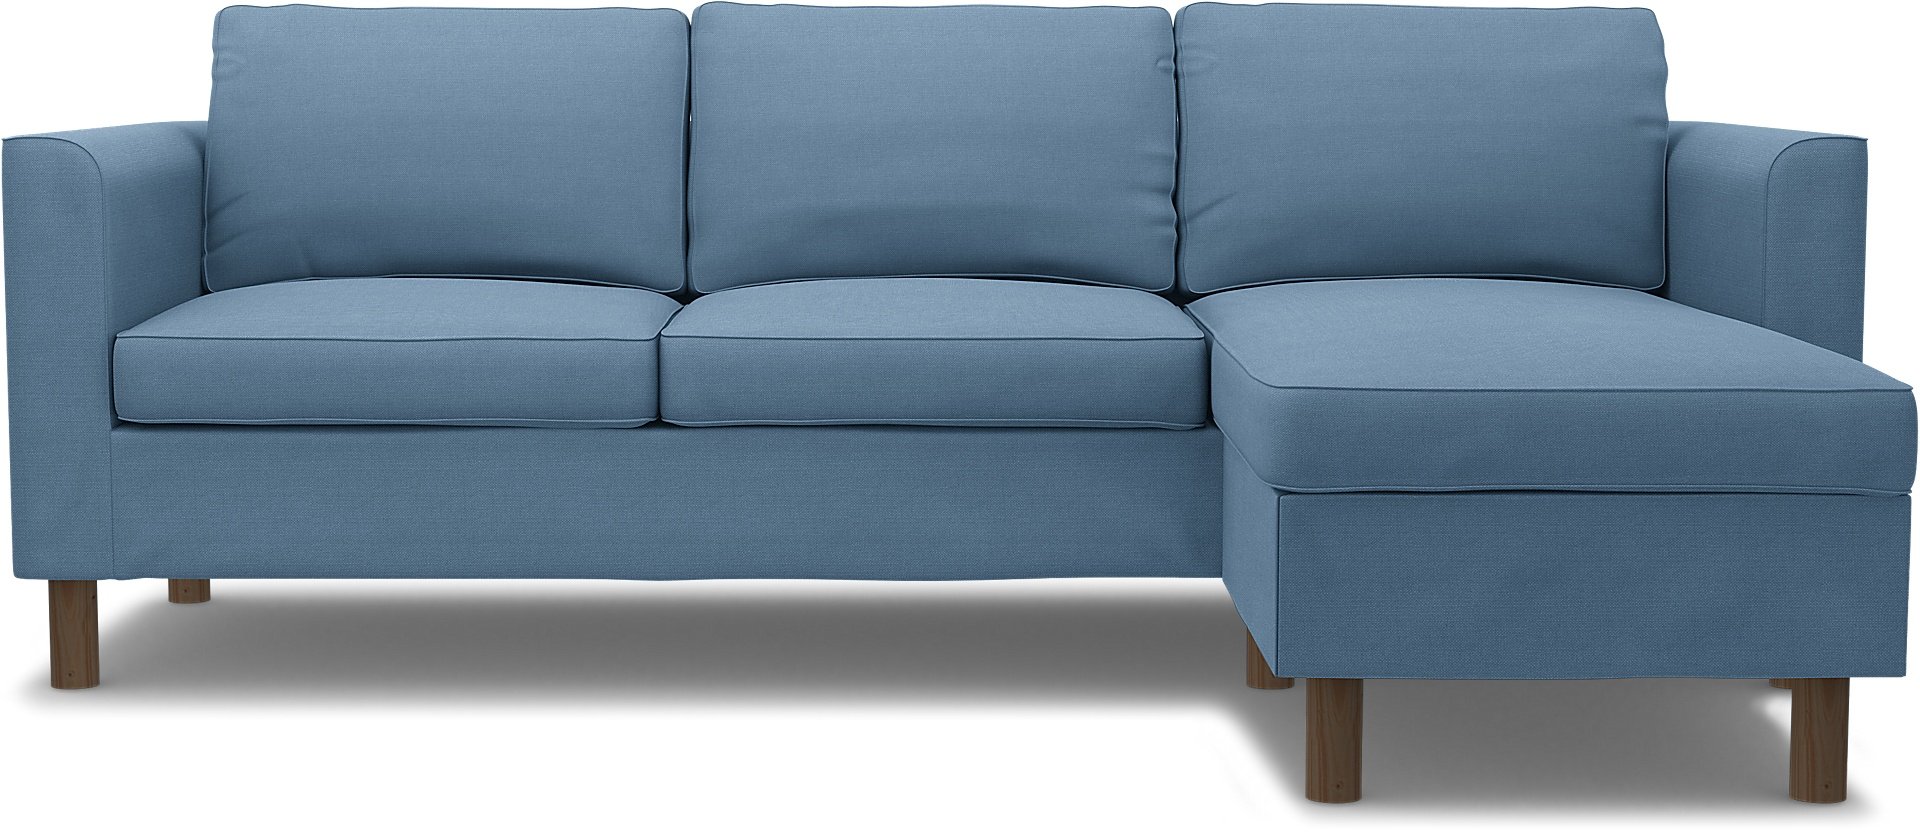 IKEA - Parup 3 Seater with chaise longue, Vintage Blue, Linen - Bemz